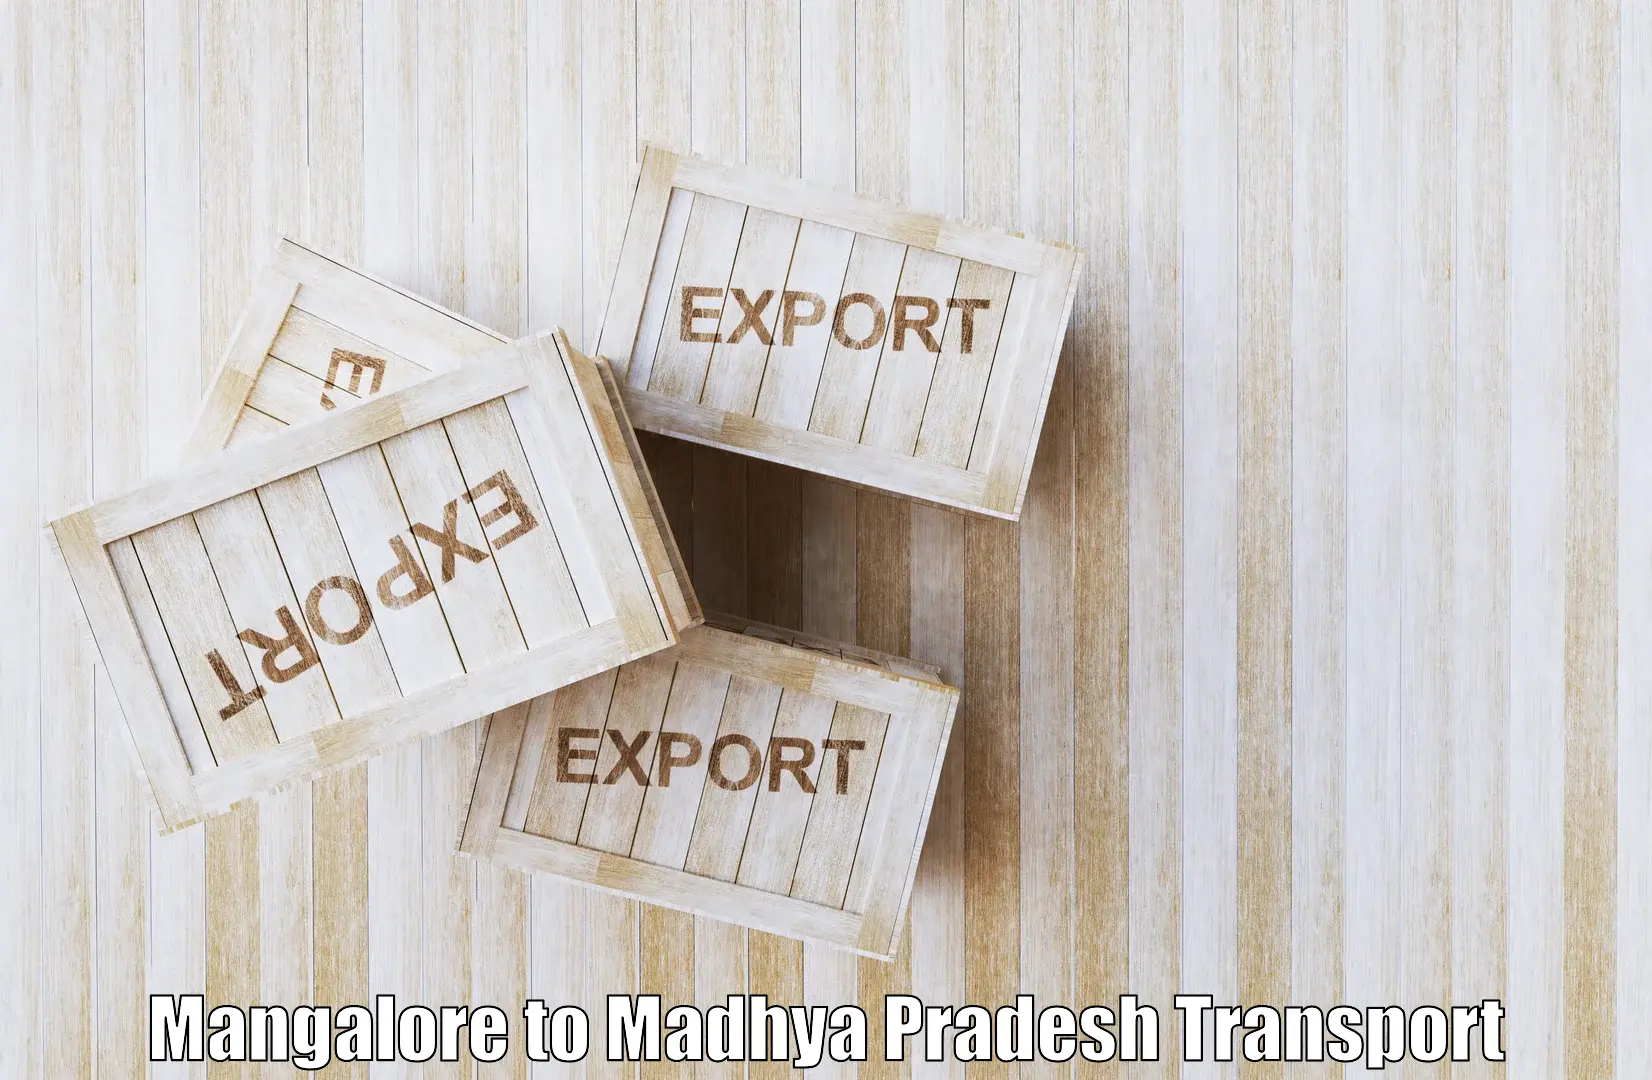 Nearest transport service Mangalore to Seoni Malwa